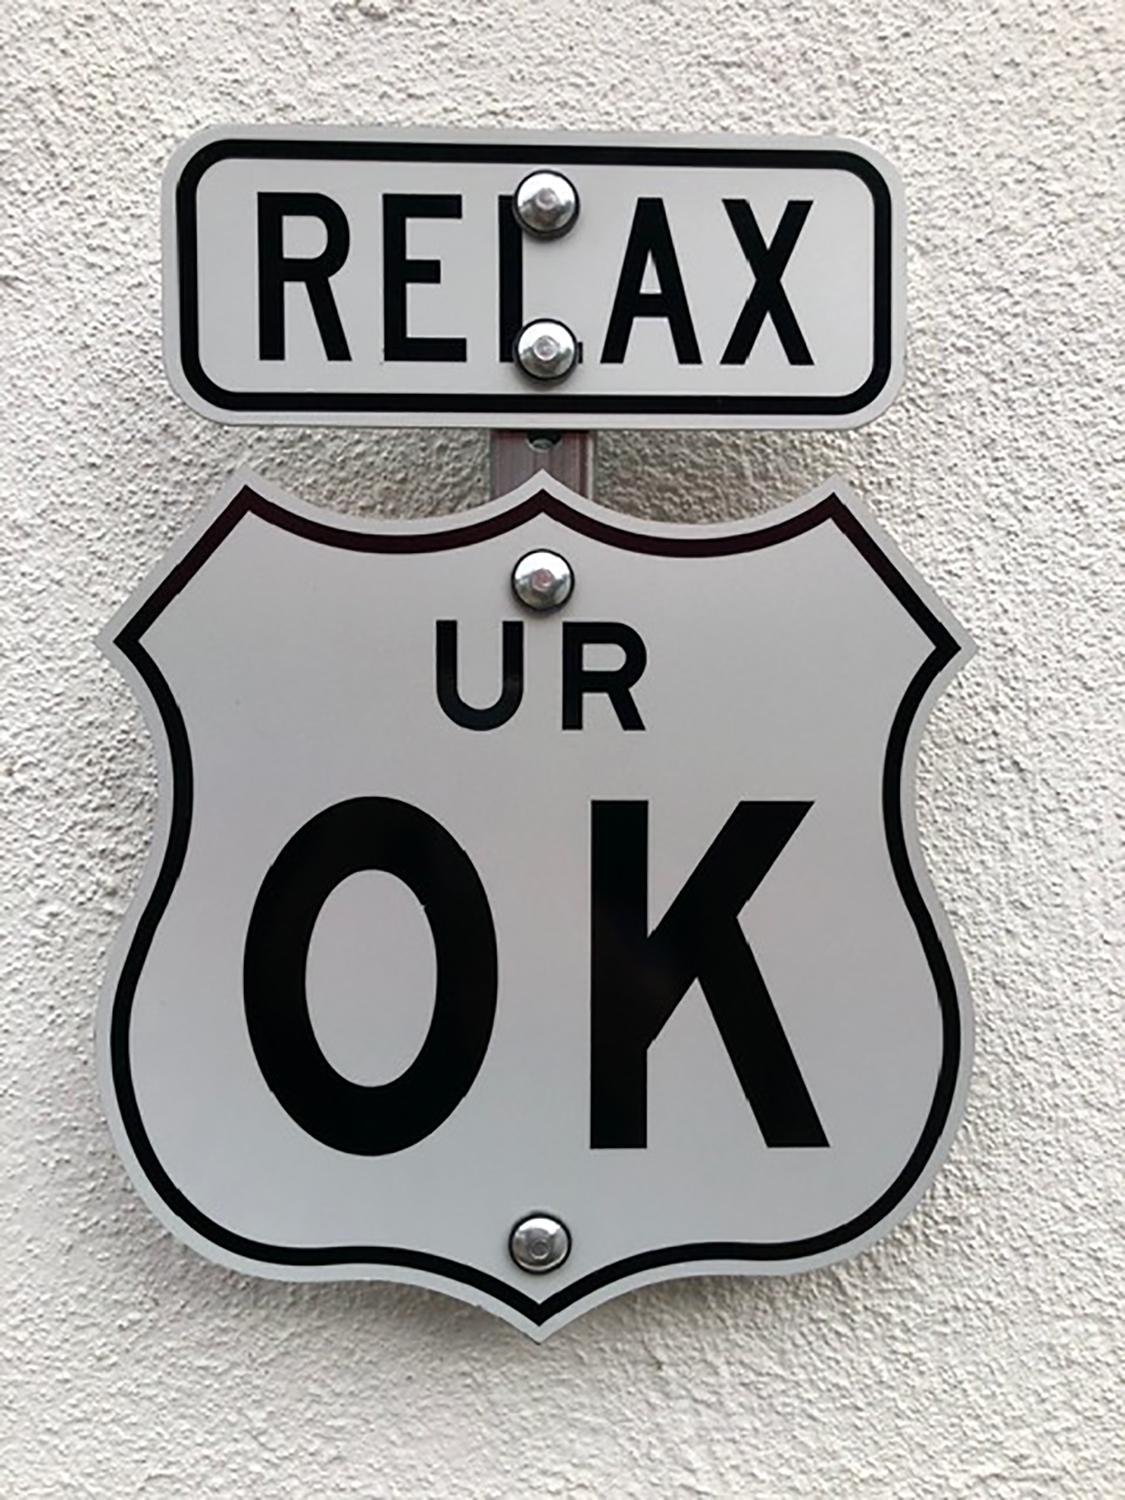 relax ur ok sign